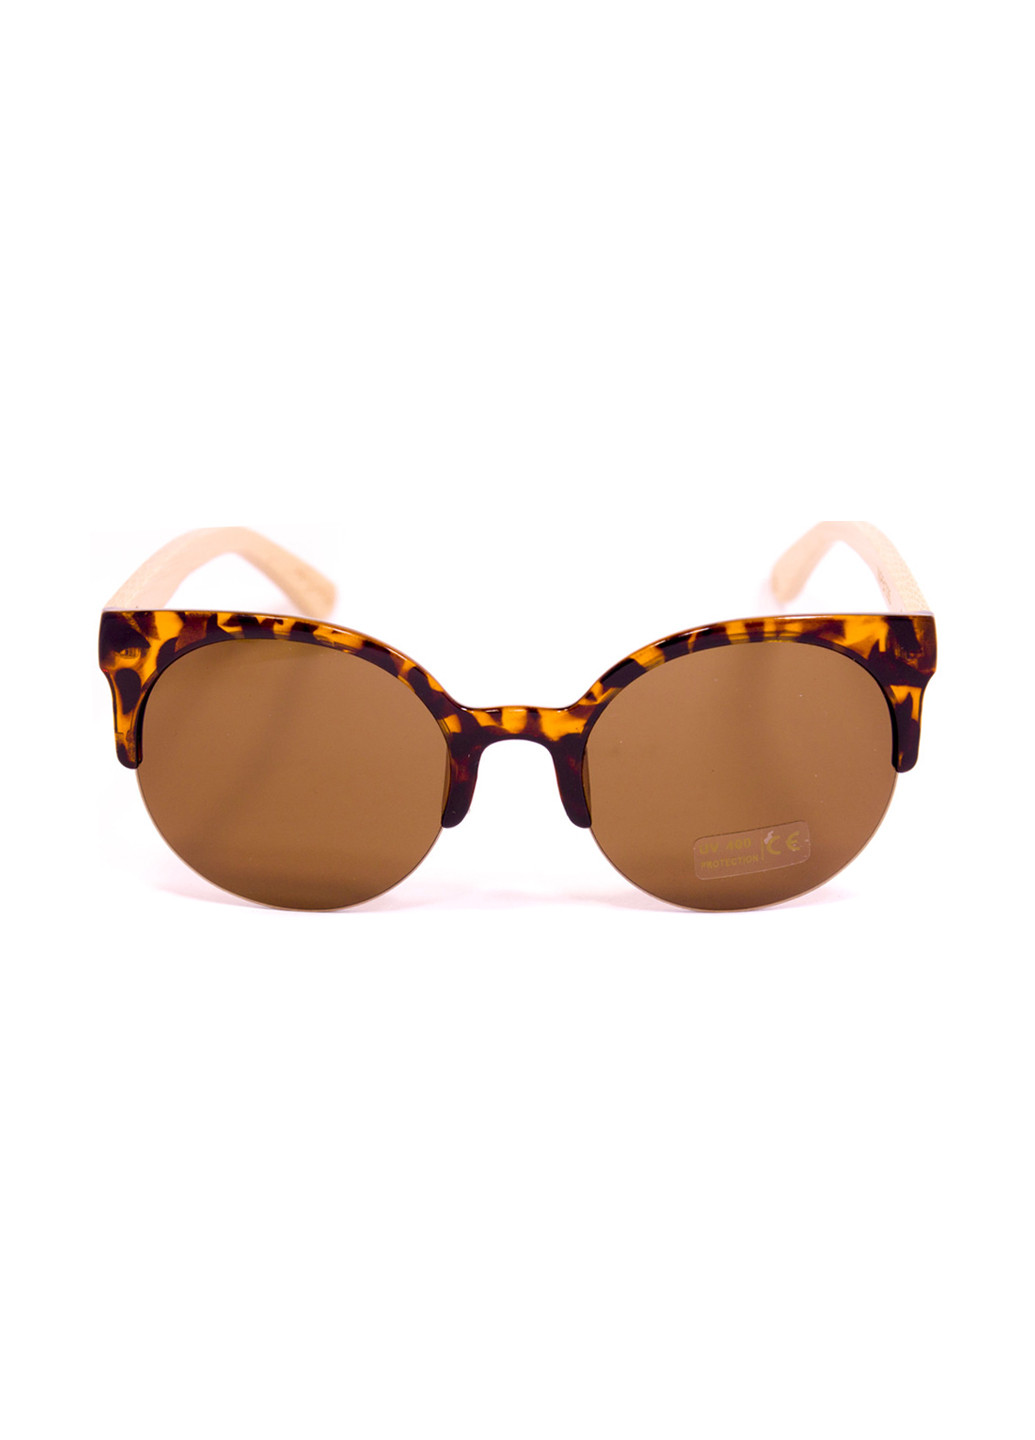 Солнцезащитные очки Mtp леопардовые коричневые